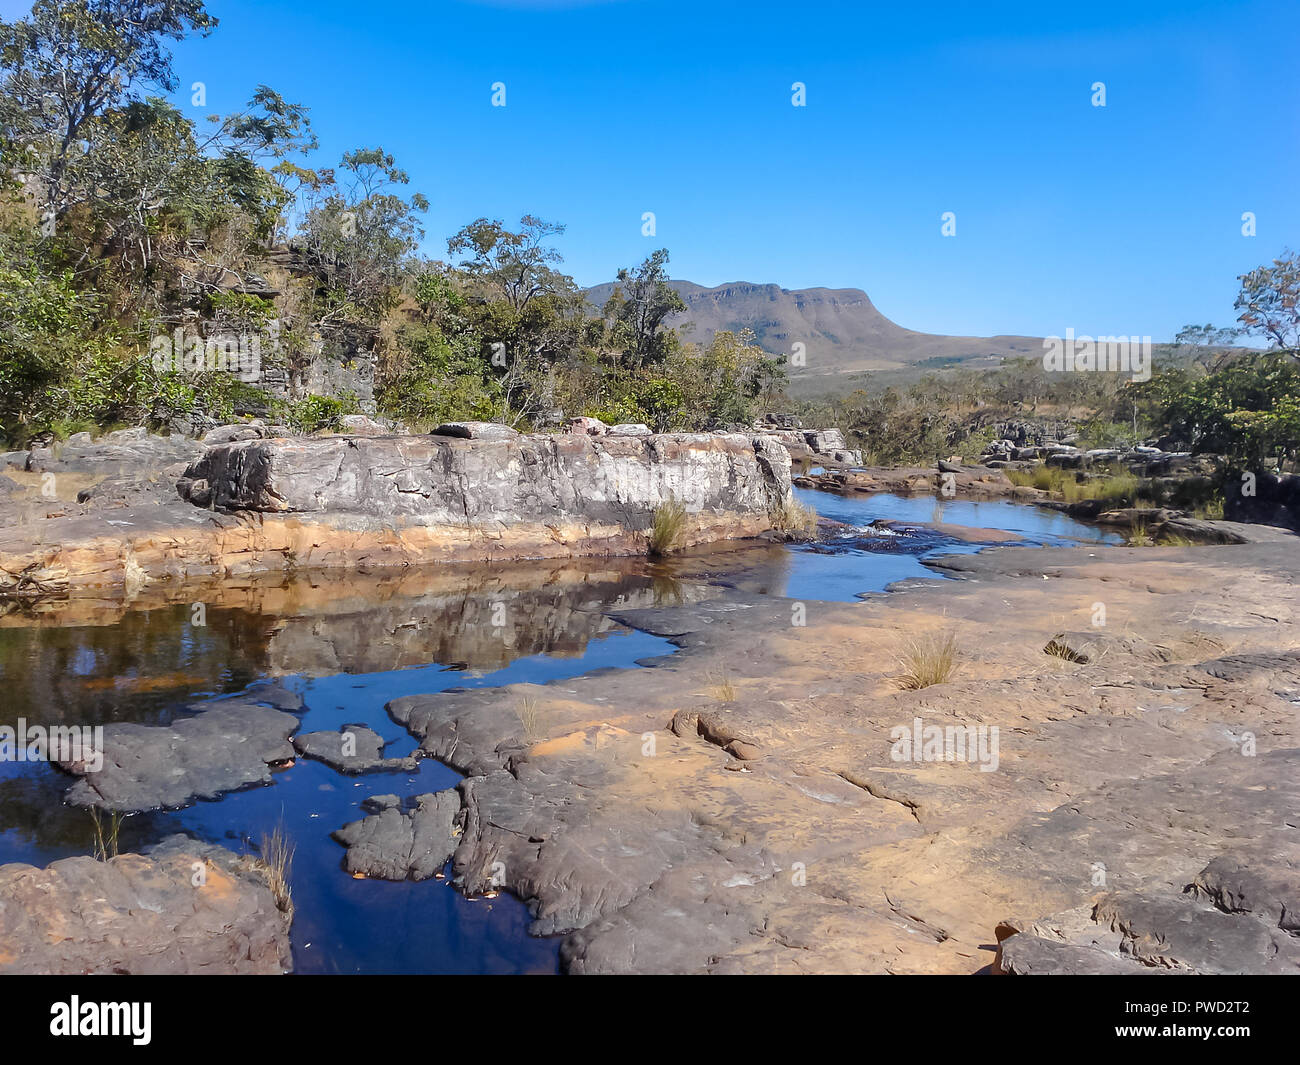 Una rilassante vista a livello oculare di un ruscello che corre attraverso le rocce in primo piano e le montagne lontano in background Foto Stock